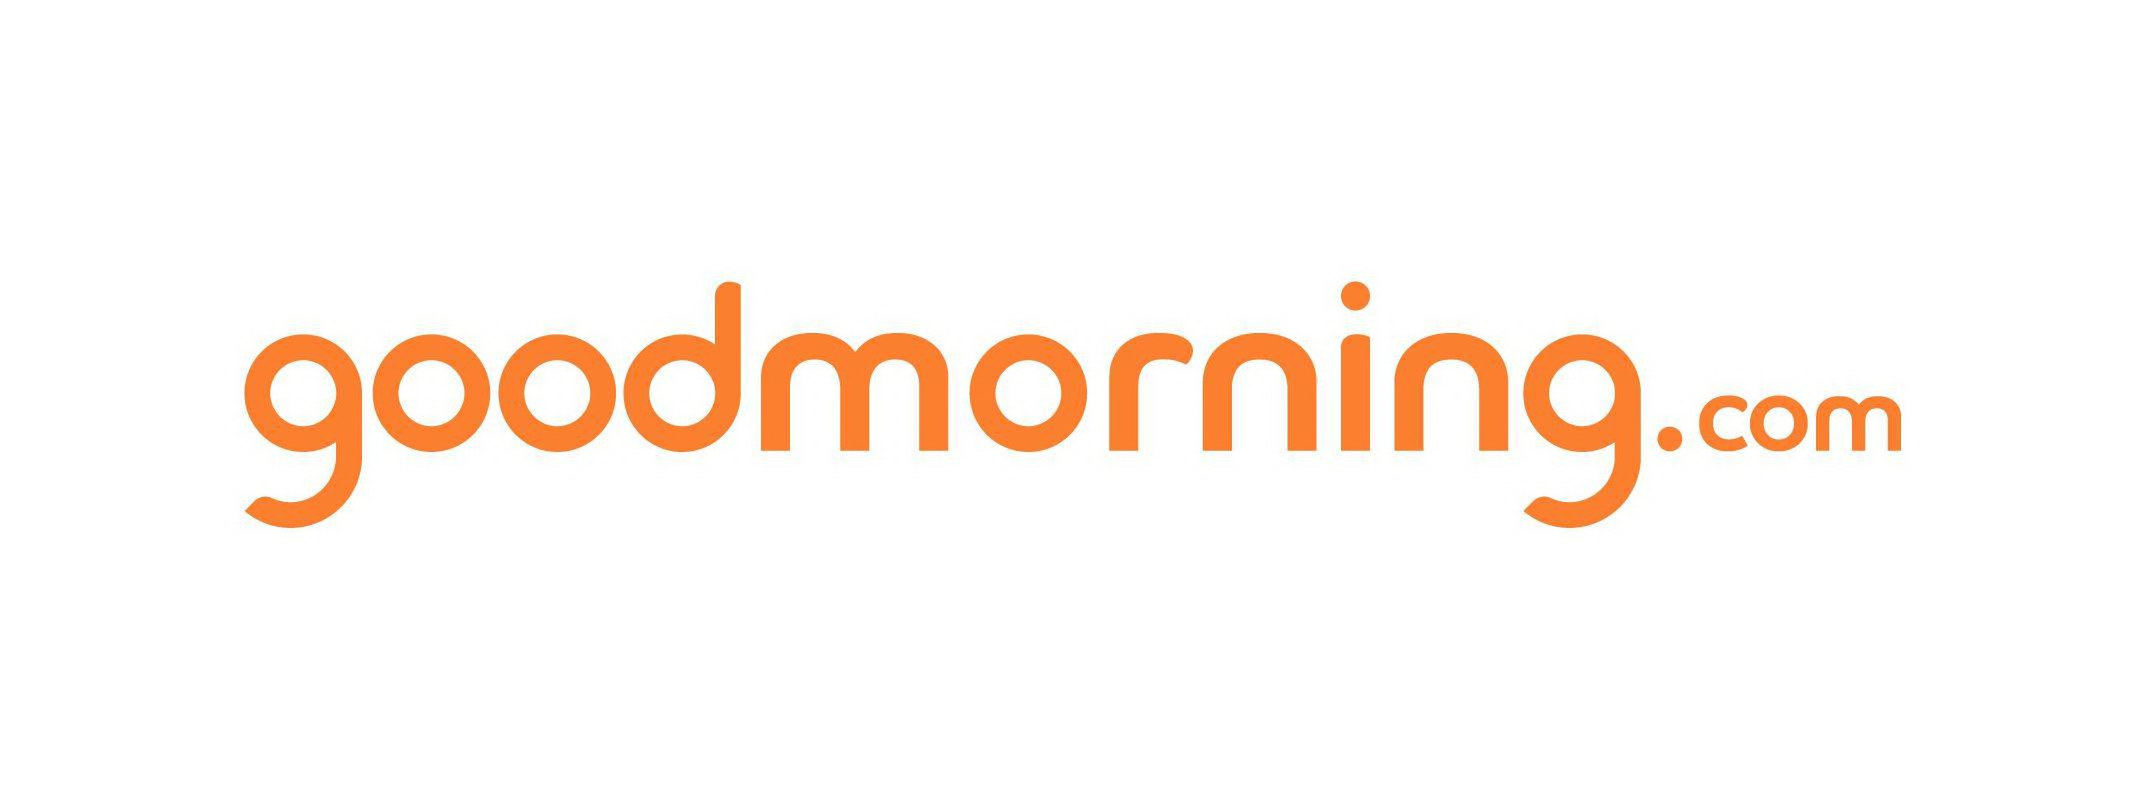 Trademark Logo GOODMORNING.COM